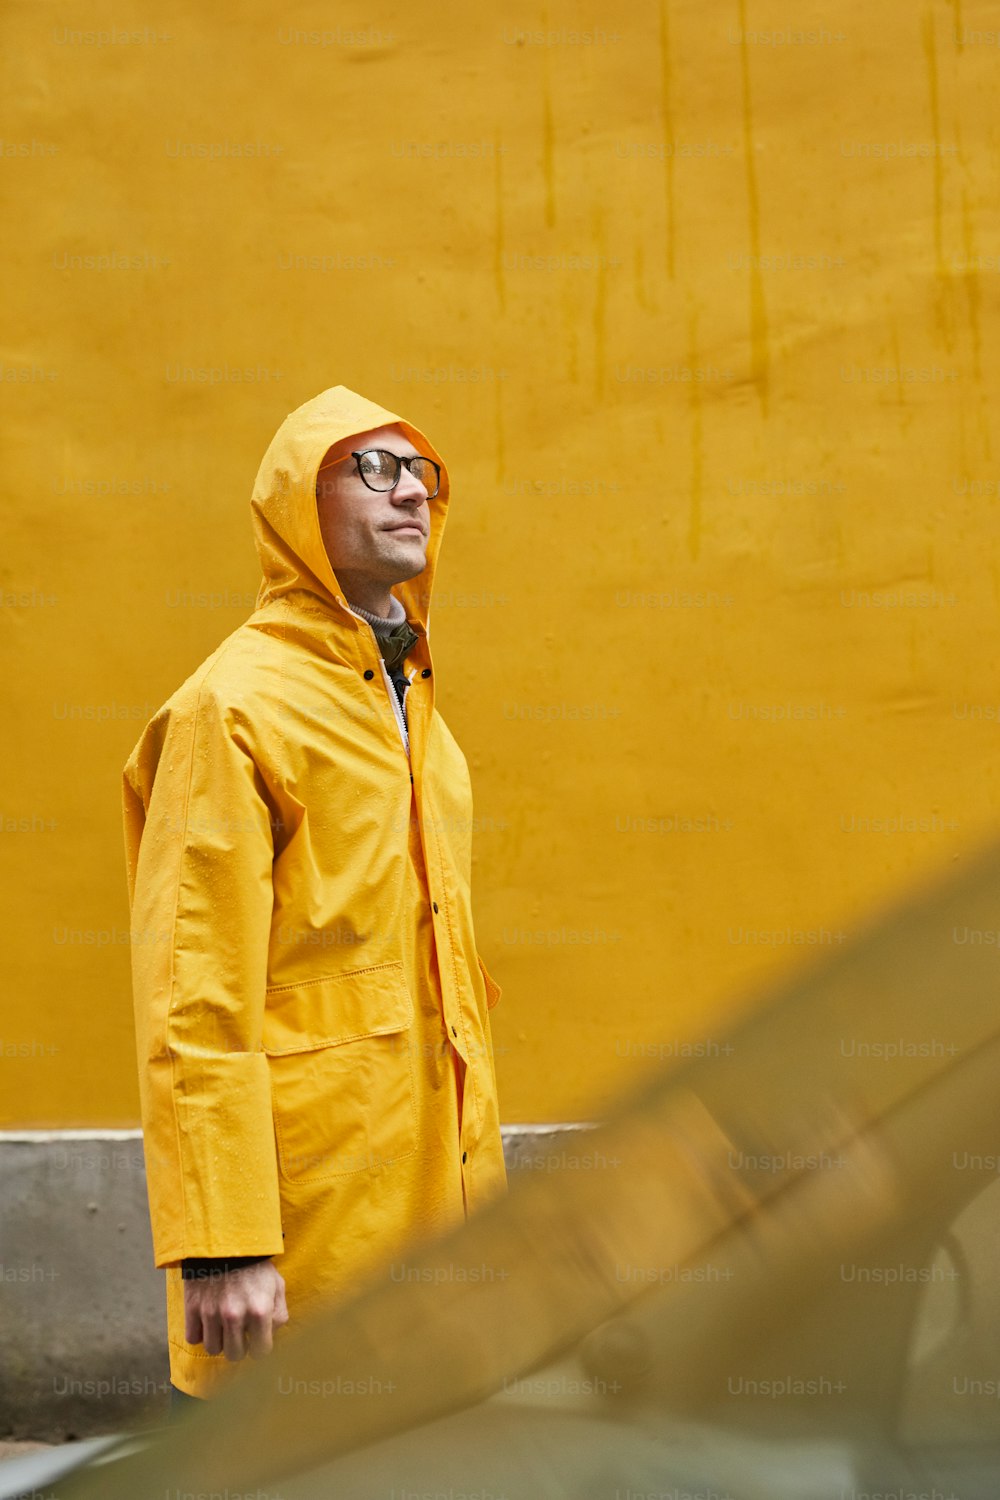 黄色いレインコートを着た成熟した白人男性が雨の中を歩いている縦方向のミディアムロングショット